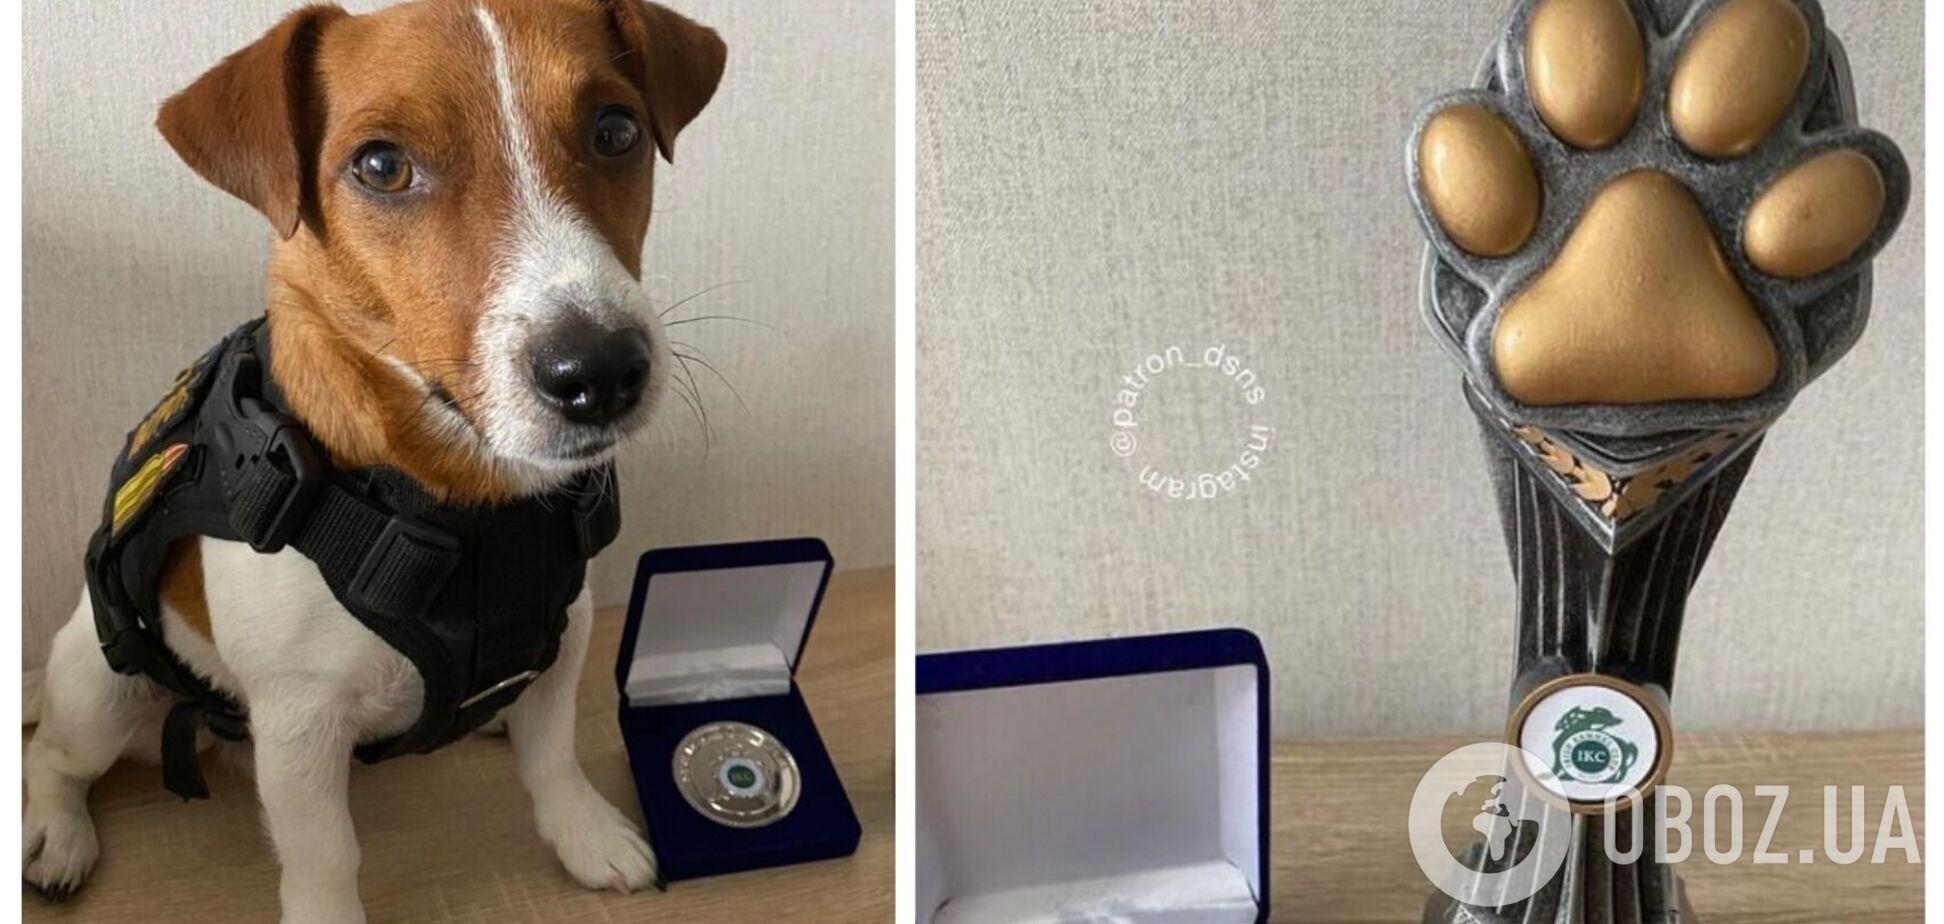 Пес-сапер Патрон получил новую награду и посвятил ее всем служебным собакам. Фото